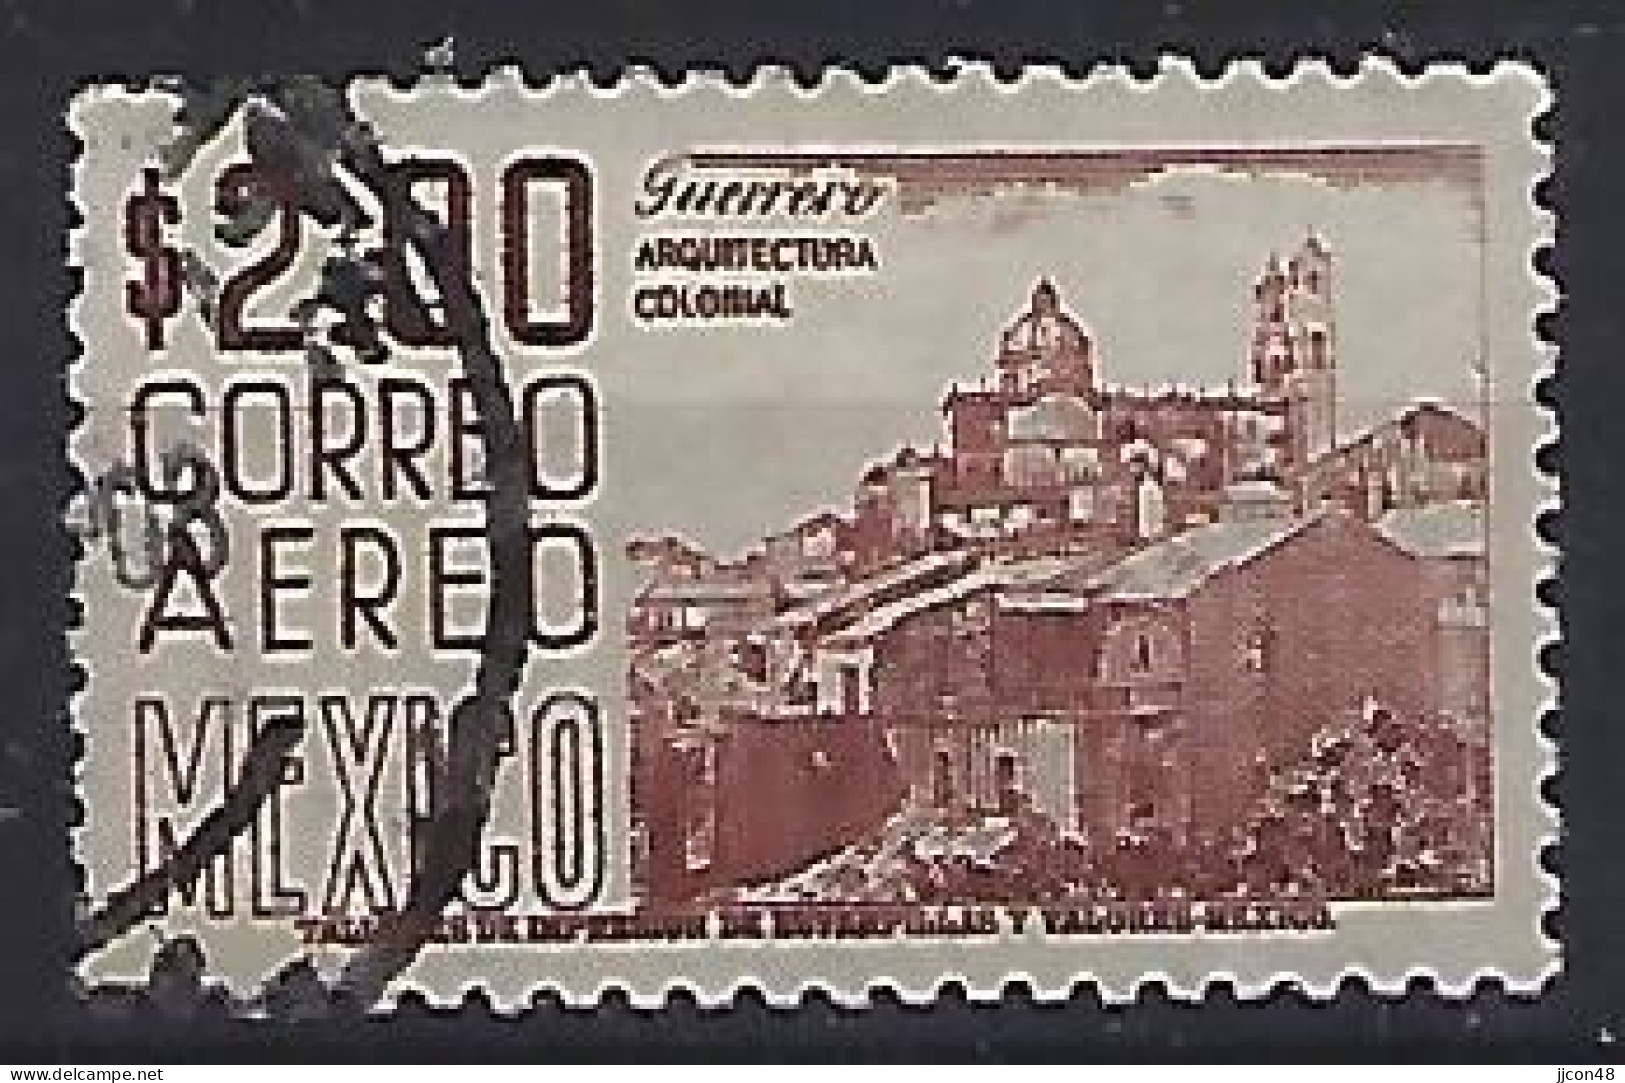 Mexico 1962-67  Einheimische Bilder (o) Mi.1129 A Z (issued 1971) - Mexiko